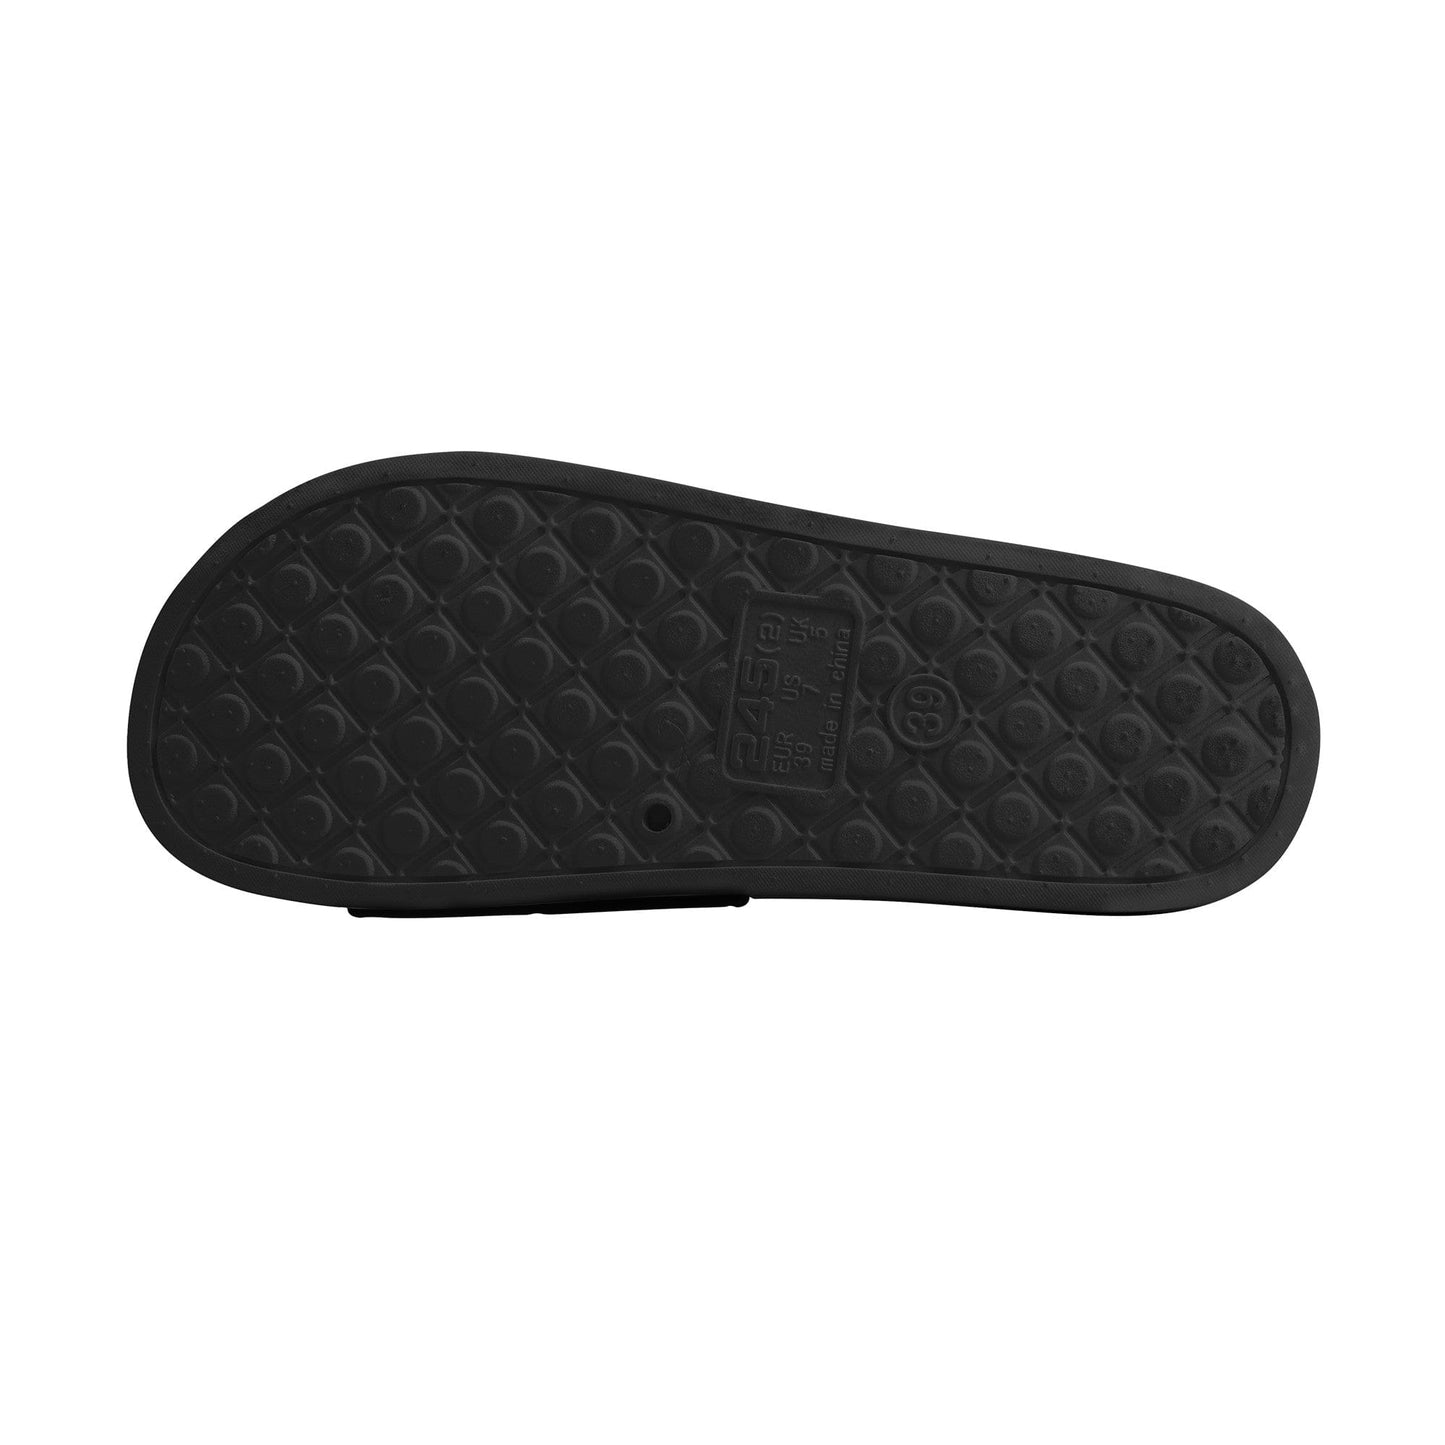 
                  
                    Athletic Apparatus D30 Slide Sandals - Black - Athletic Apparatus
                  
                